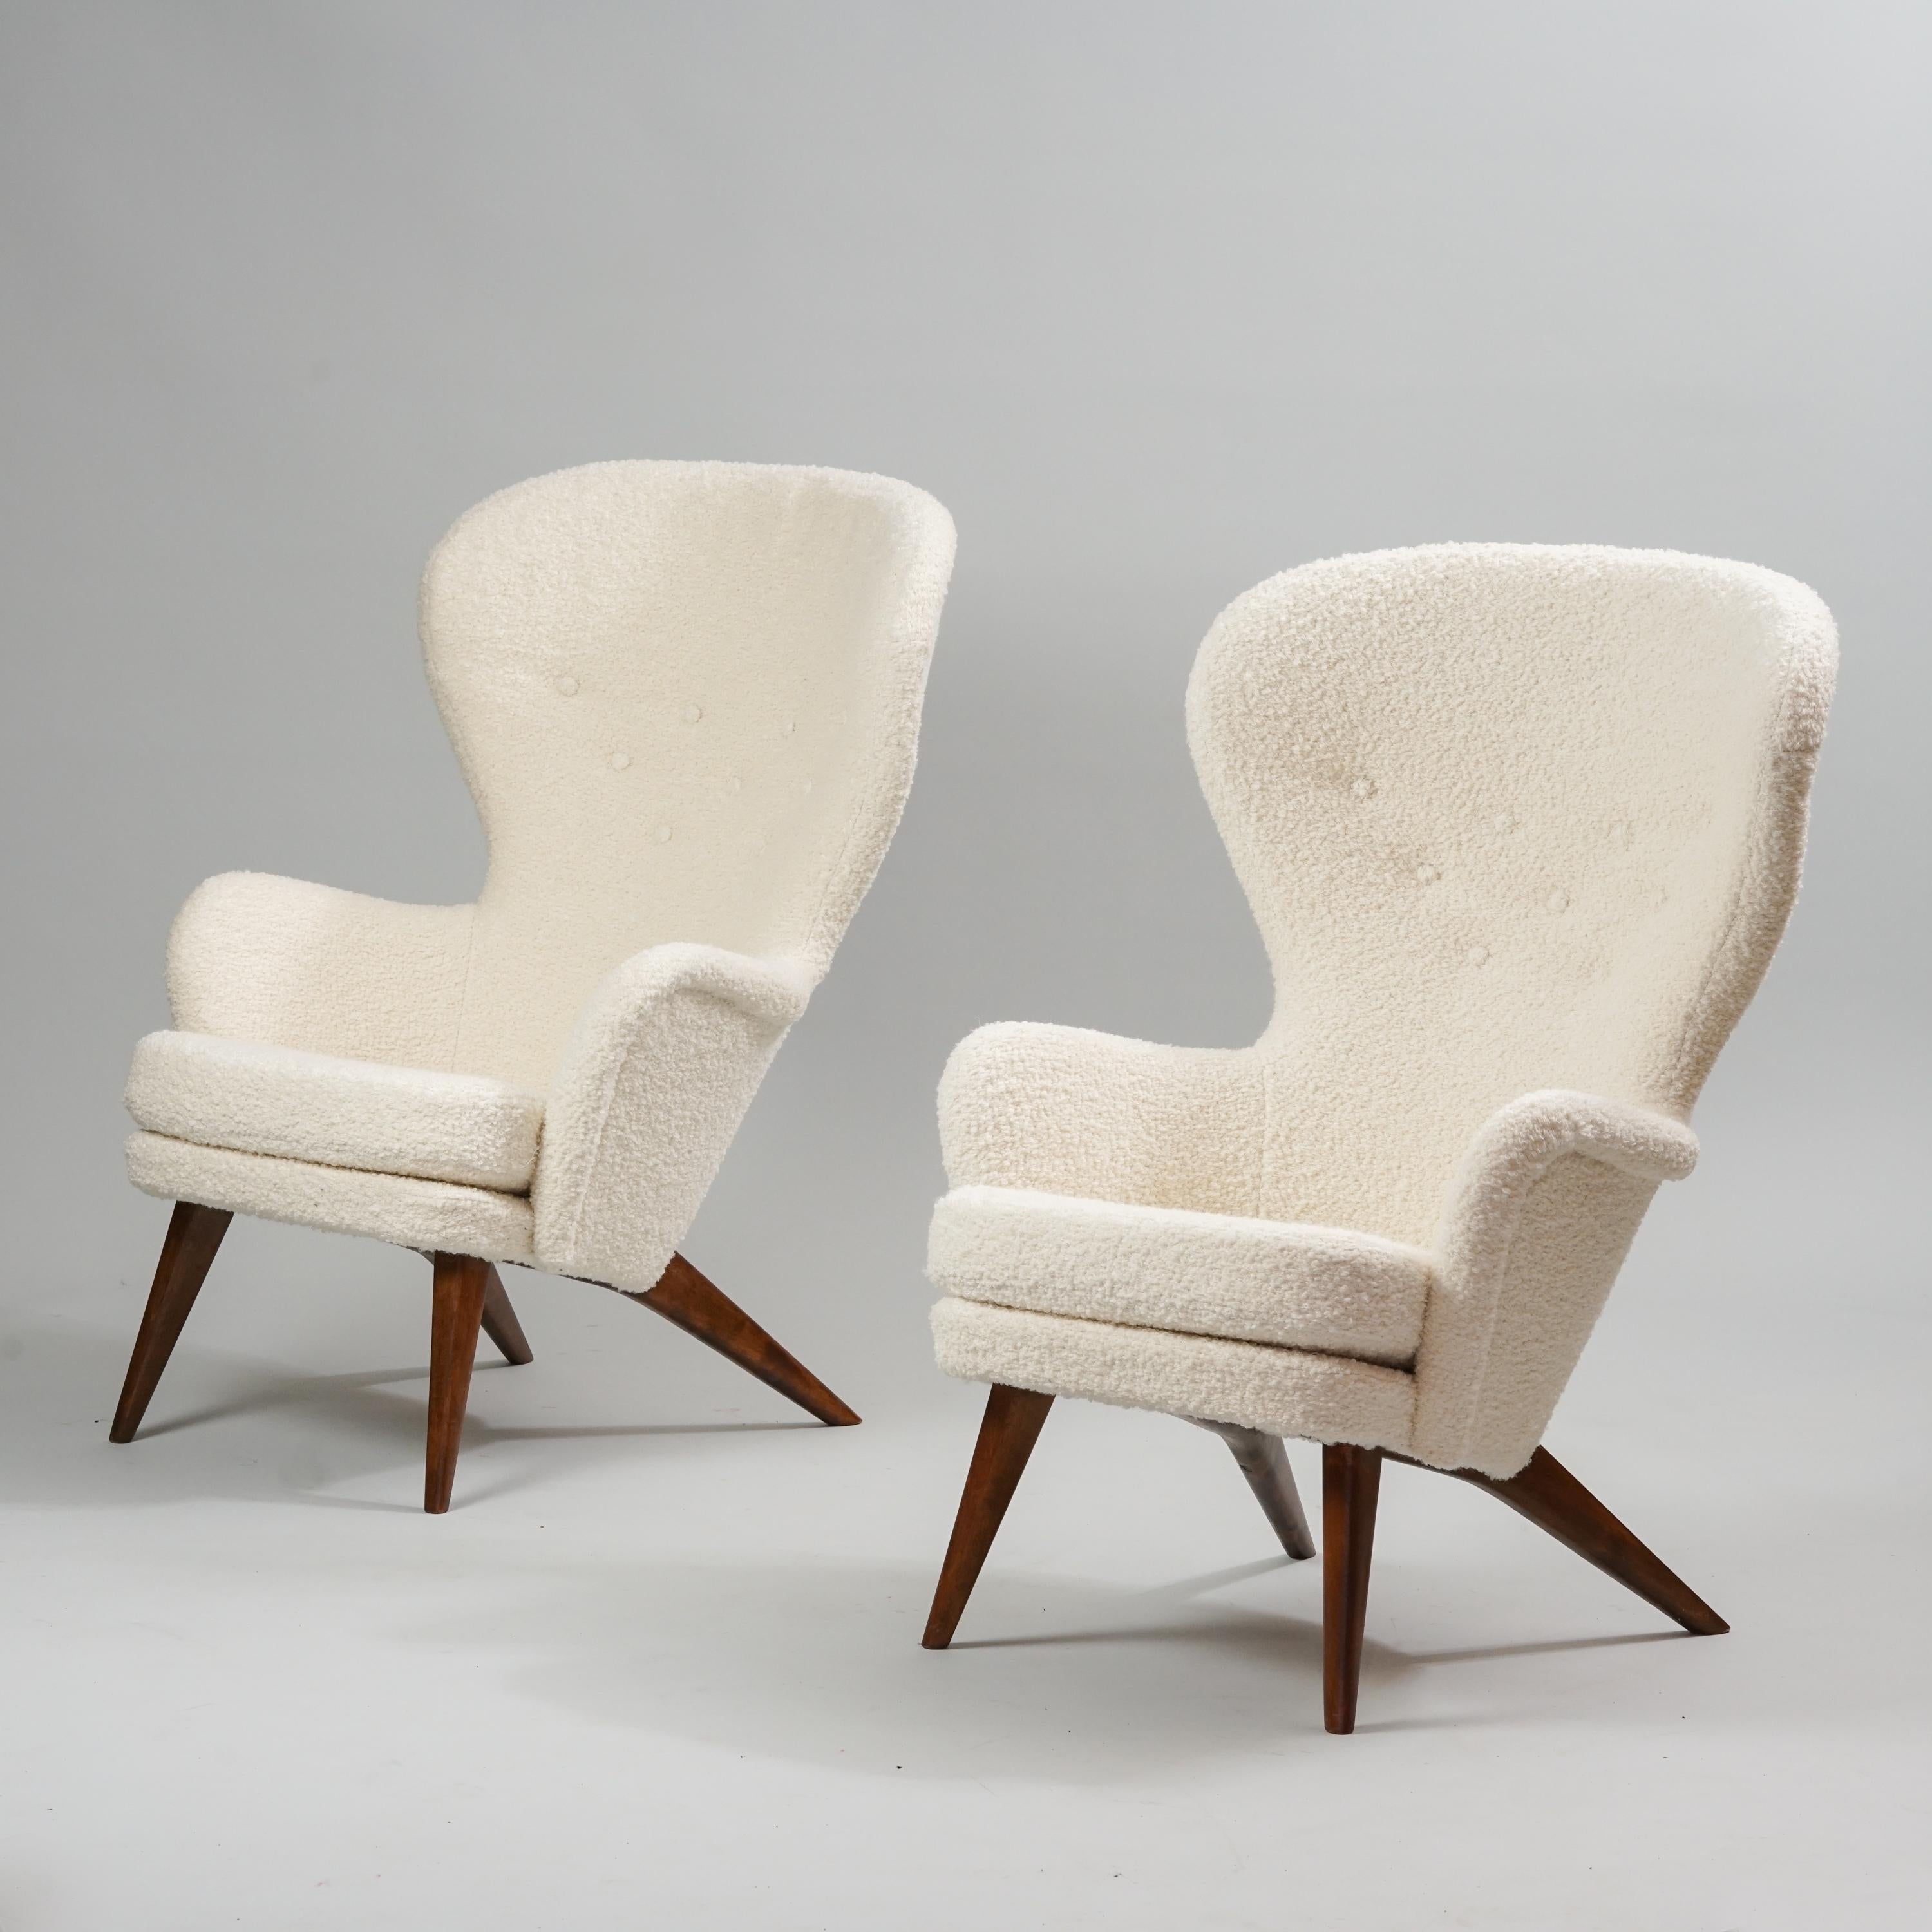 Ensemble de deux fauteuils modèle Siesta, conçus par Carl Gustaf Hiort af Ornäs, fabriqués par Hiort Tuote, années 1950. Marqué. Pieds en bouleau teinté. Rembourré avec un tissu de qualité 